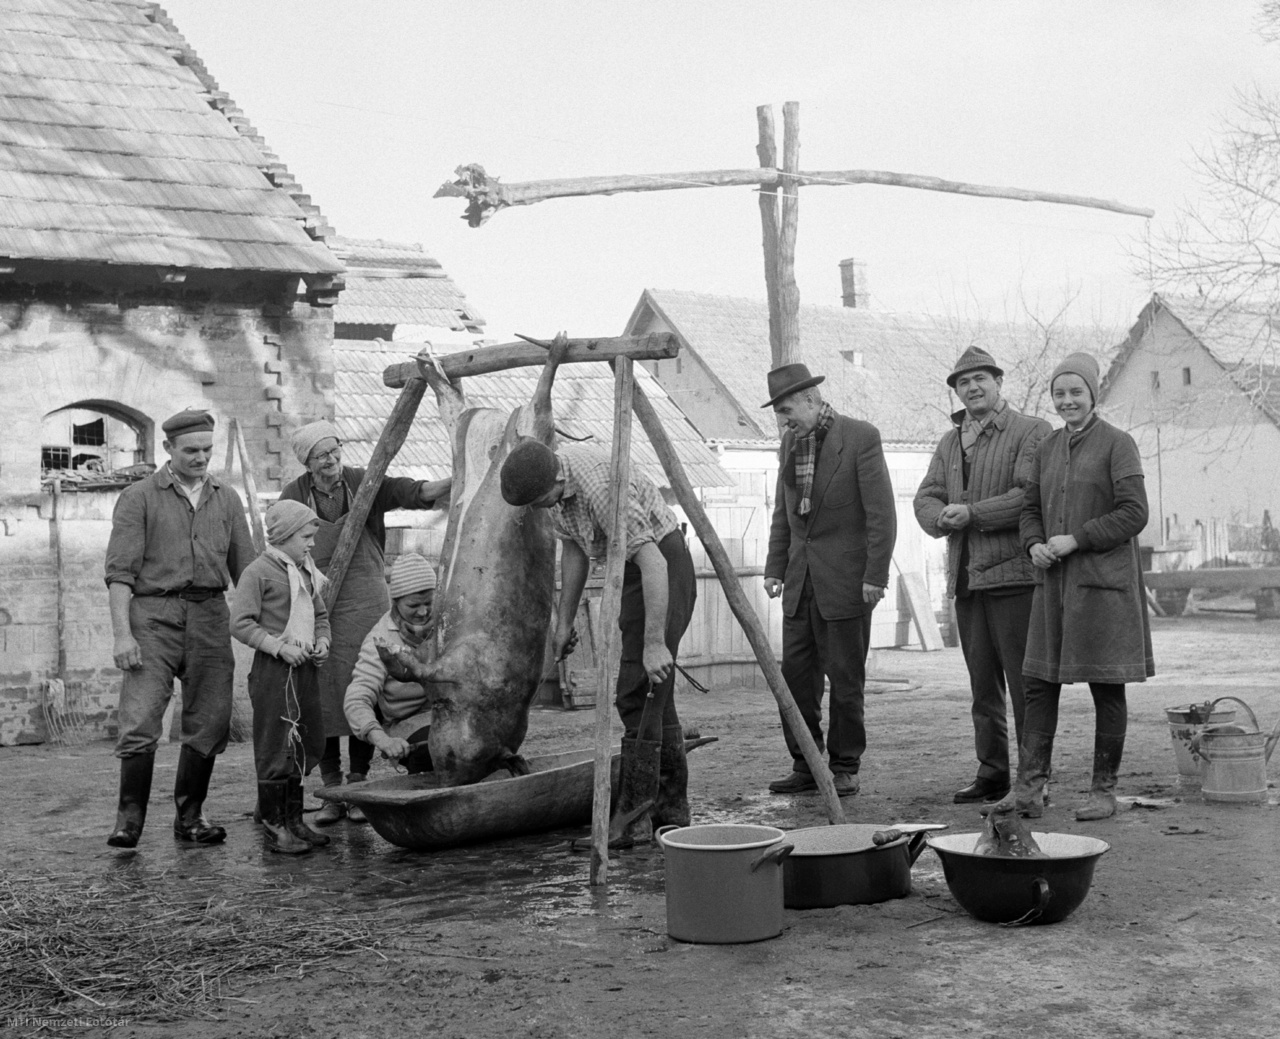 Magyarország, 1965. december 6. A levágott sertés feldolgozása a disznóvágáson. A felvétel készítésének helyszíne ismeretlen.